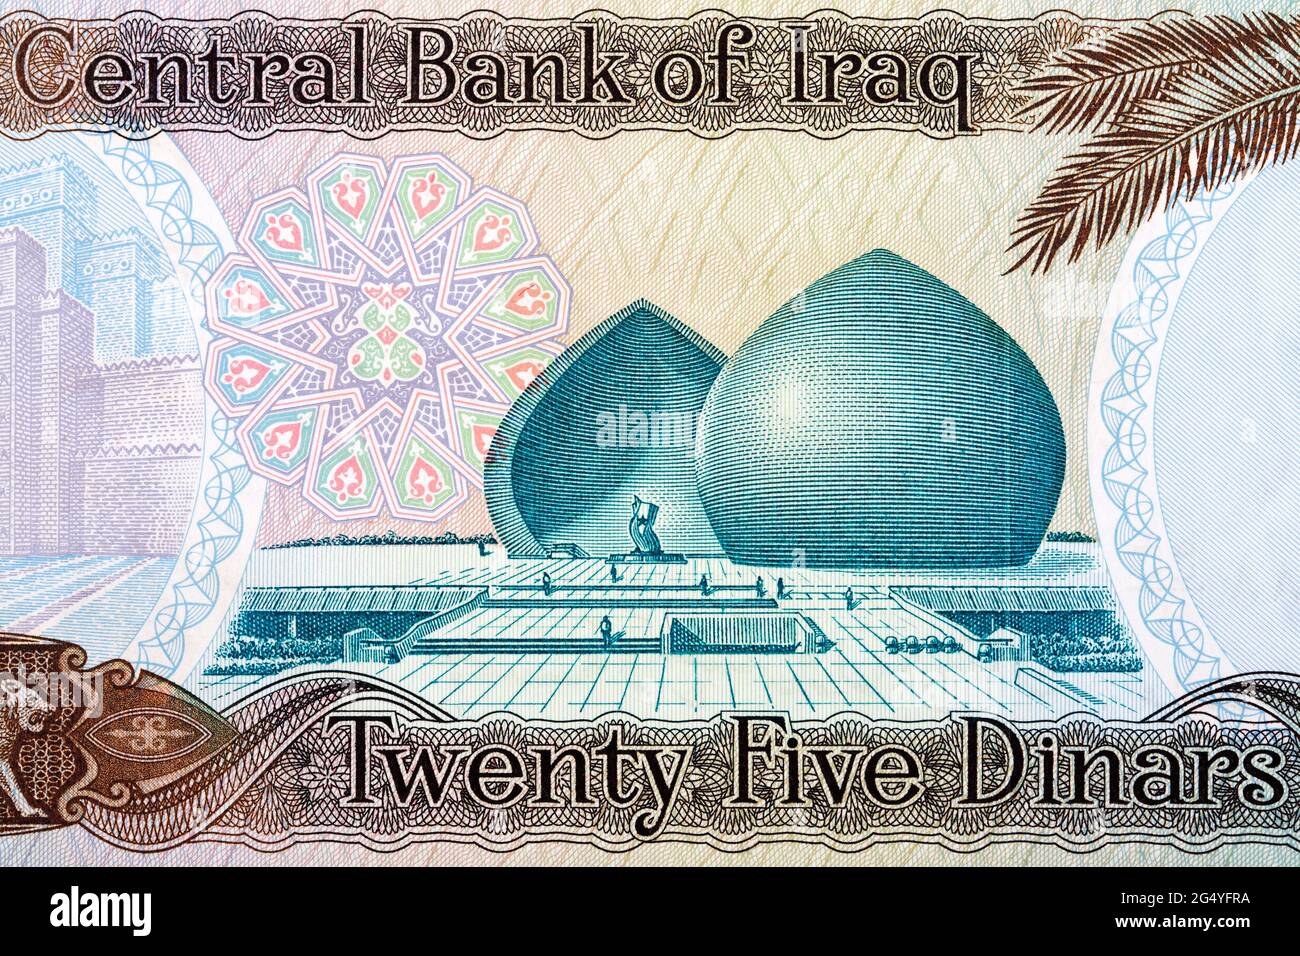 Monument Al-Shaheed de l'ancien argent irakien Banque D'Images